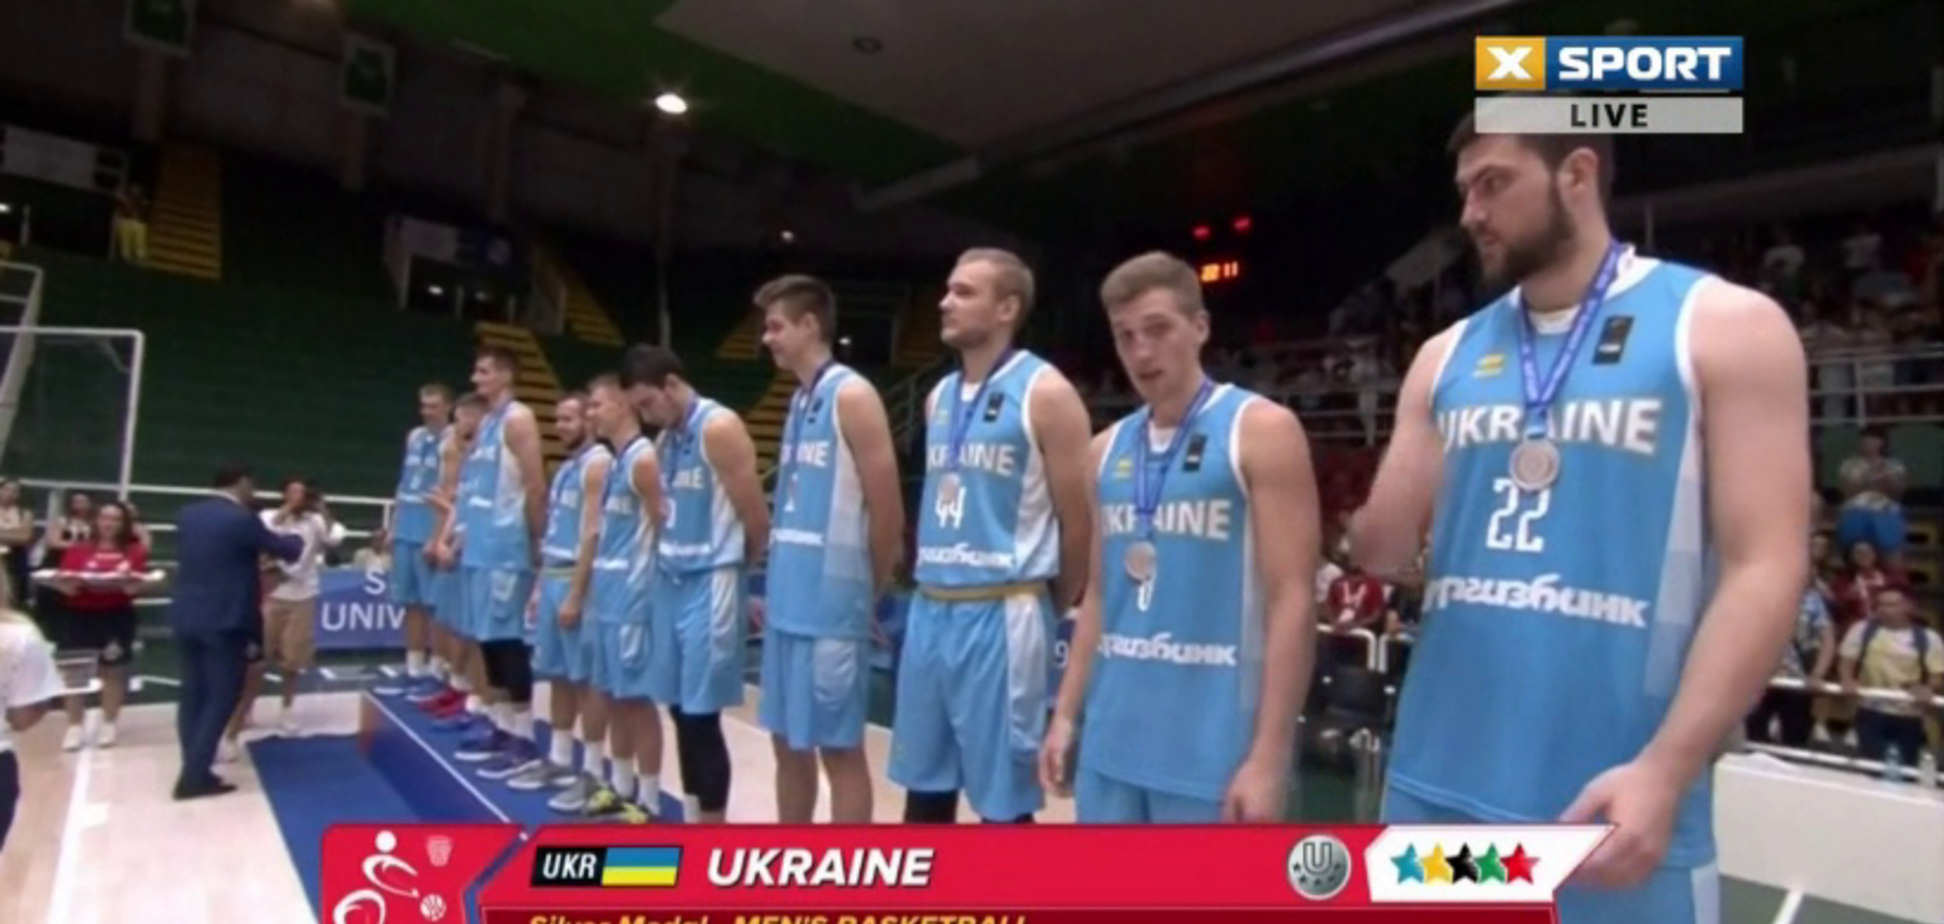 Появилось видео награждения баскетболистов Украины на Универсиаде